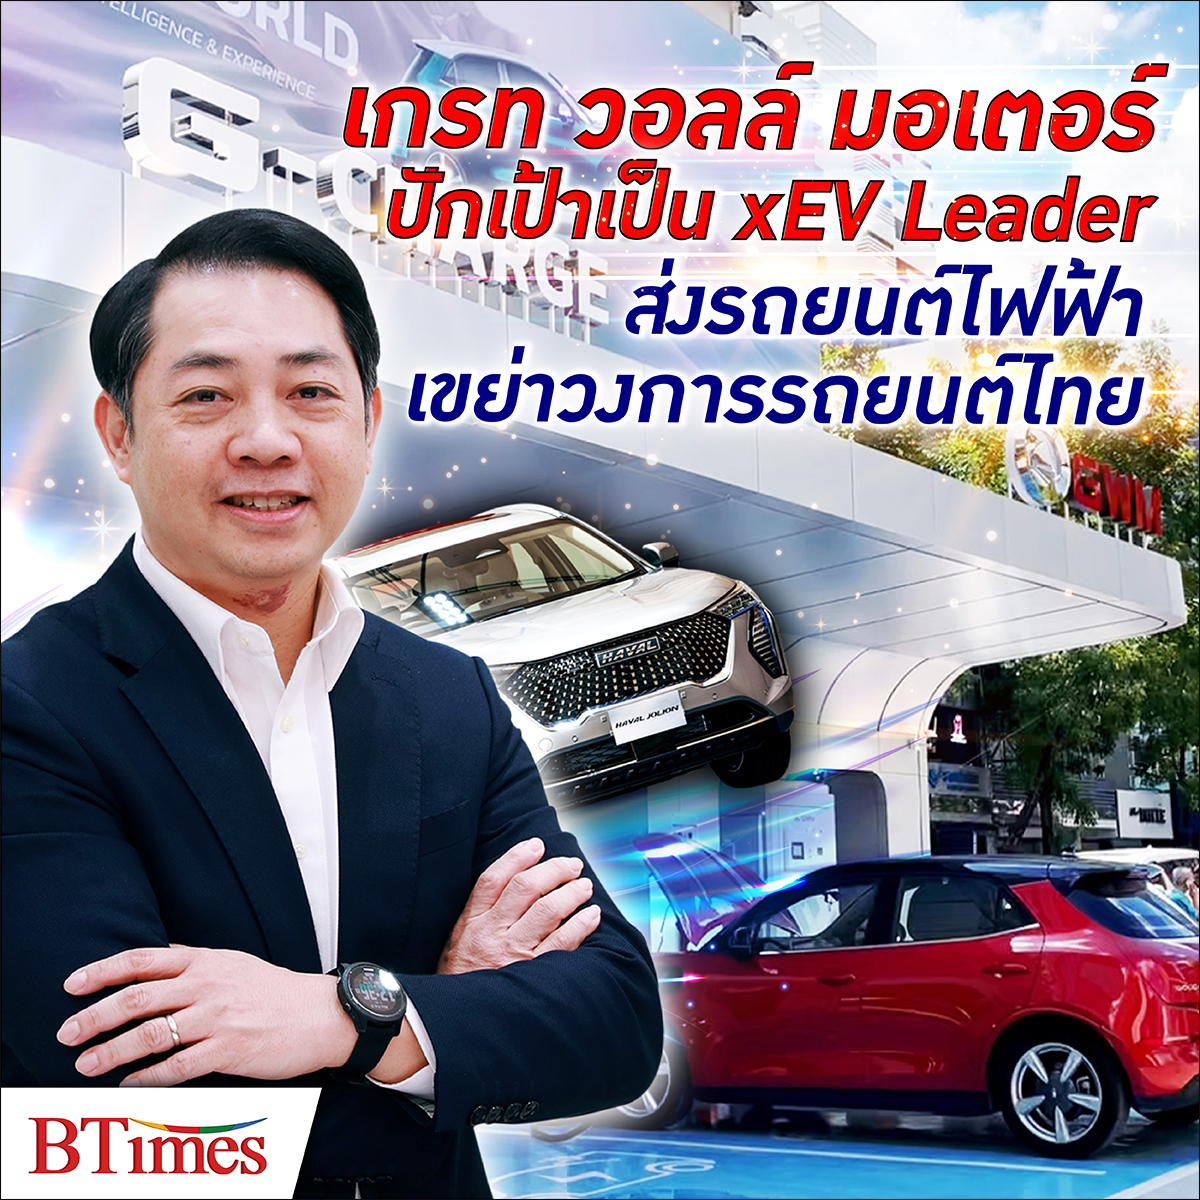 BTimes : ‘เกรท วอลล์ มอเตอร์’ พลิกอุตสาหกรรมรถยนต์ไฟฟ้าในไทย